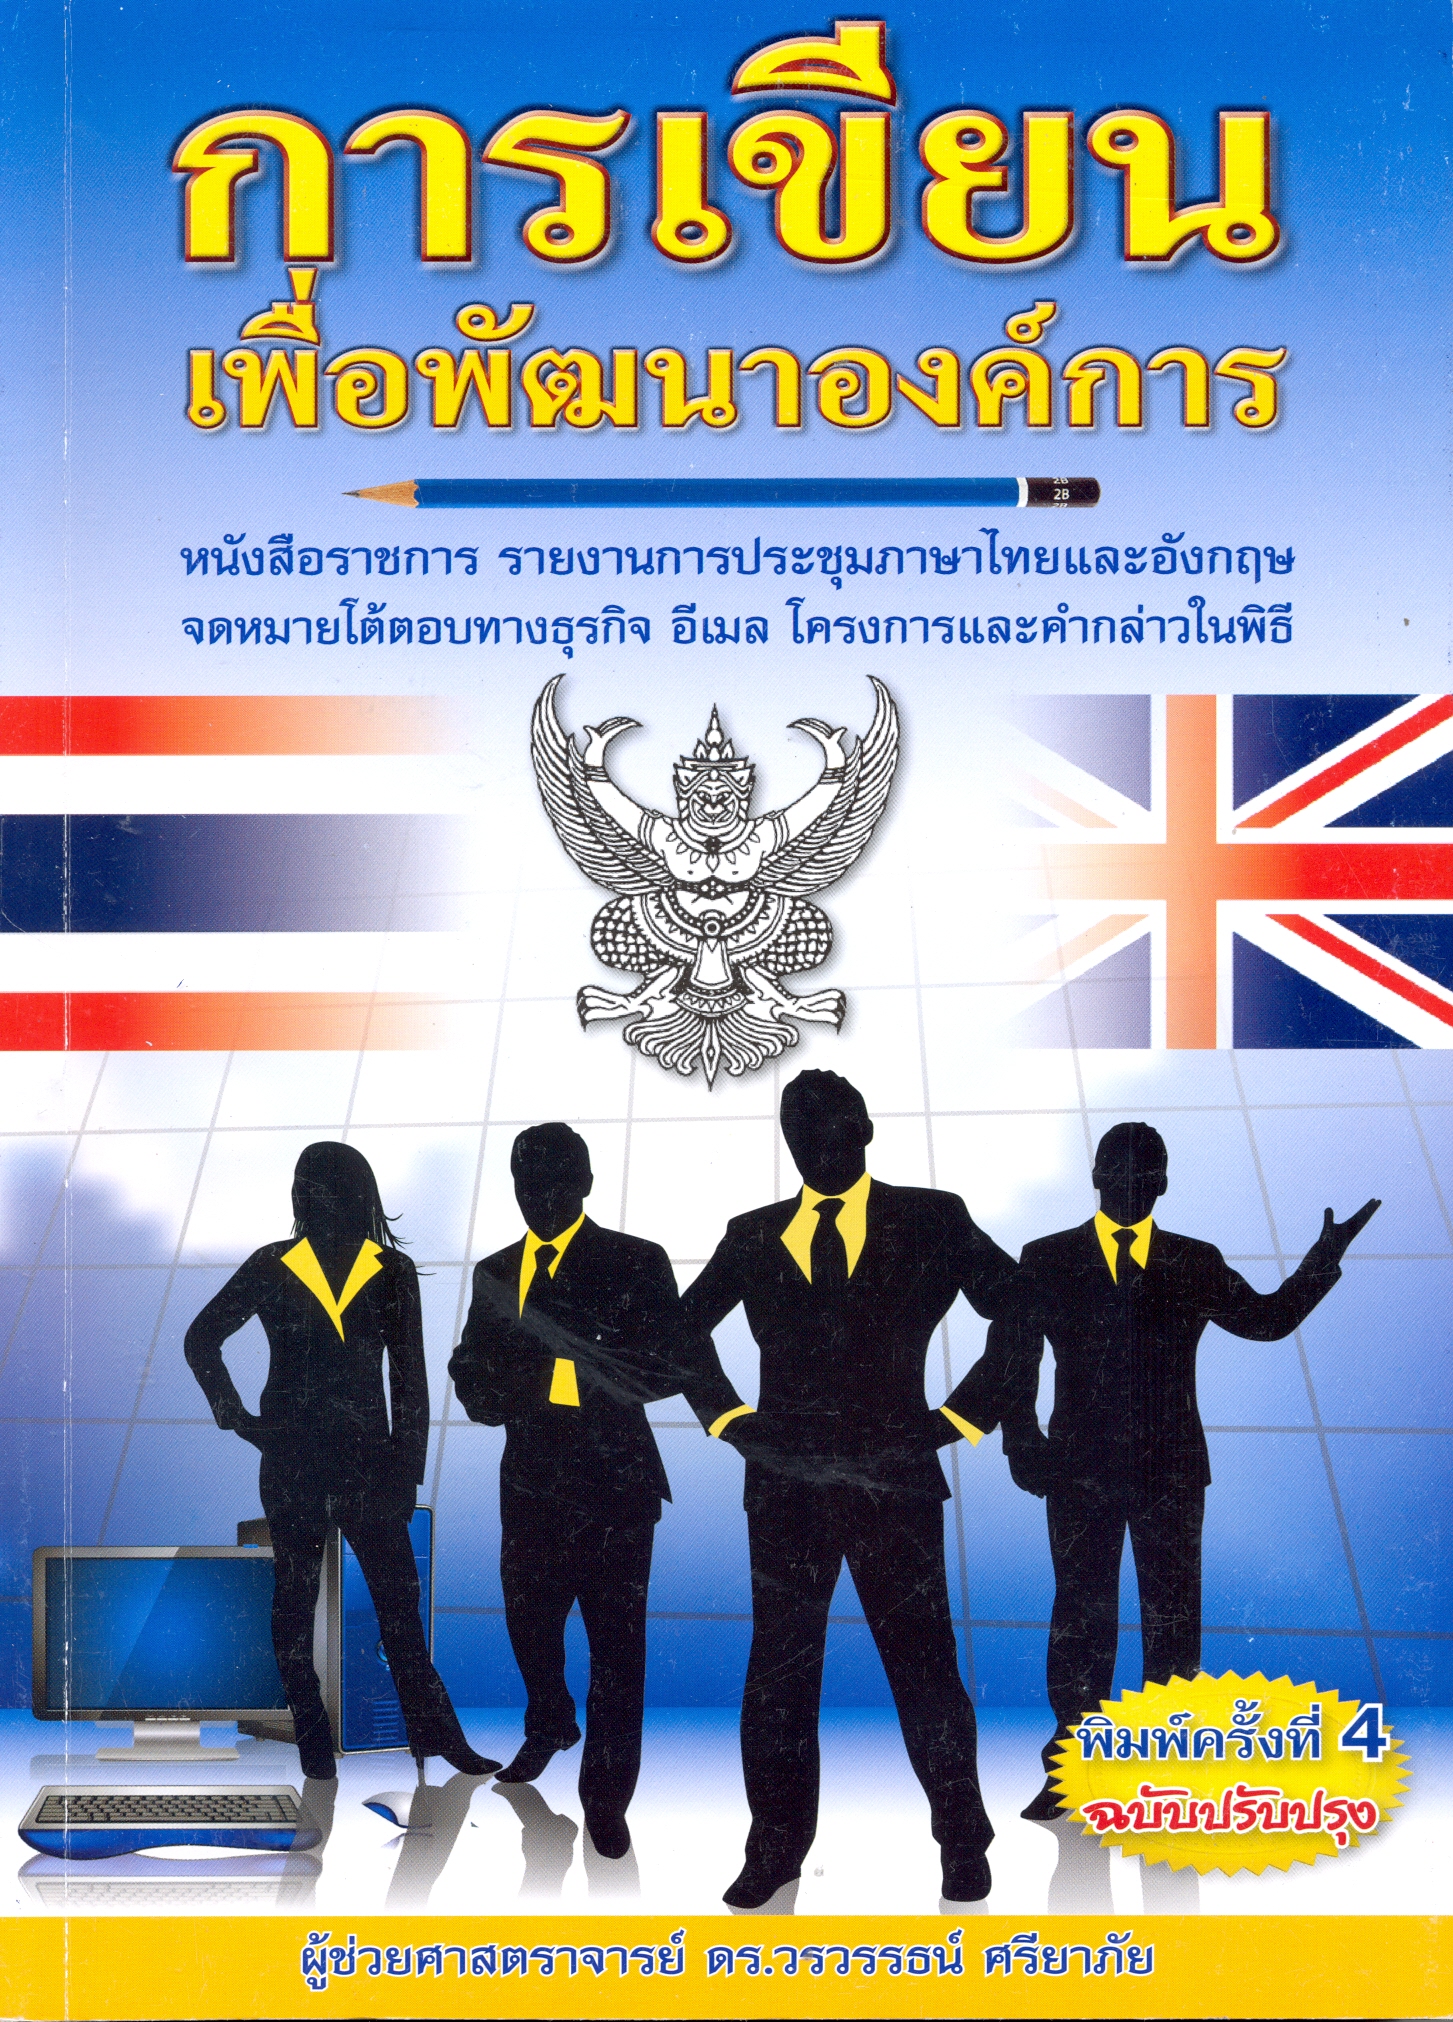 การเขียนเพื่อพัฒนาองค์การ : หนังสือราชการ รายงานการประชุมภาษาไทยและอังกฤษ จดหมายโต้ตอบทางธุรกิจ อีเมล โครงการและคำกล่าวในพิธี 